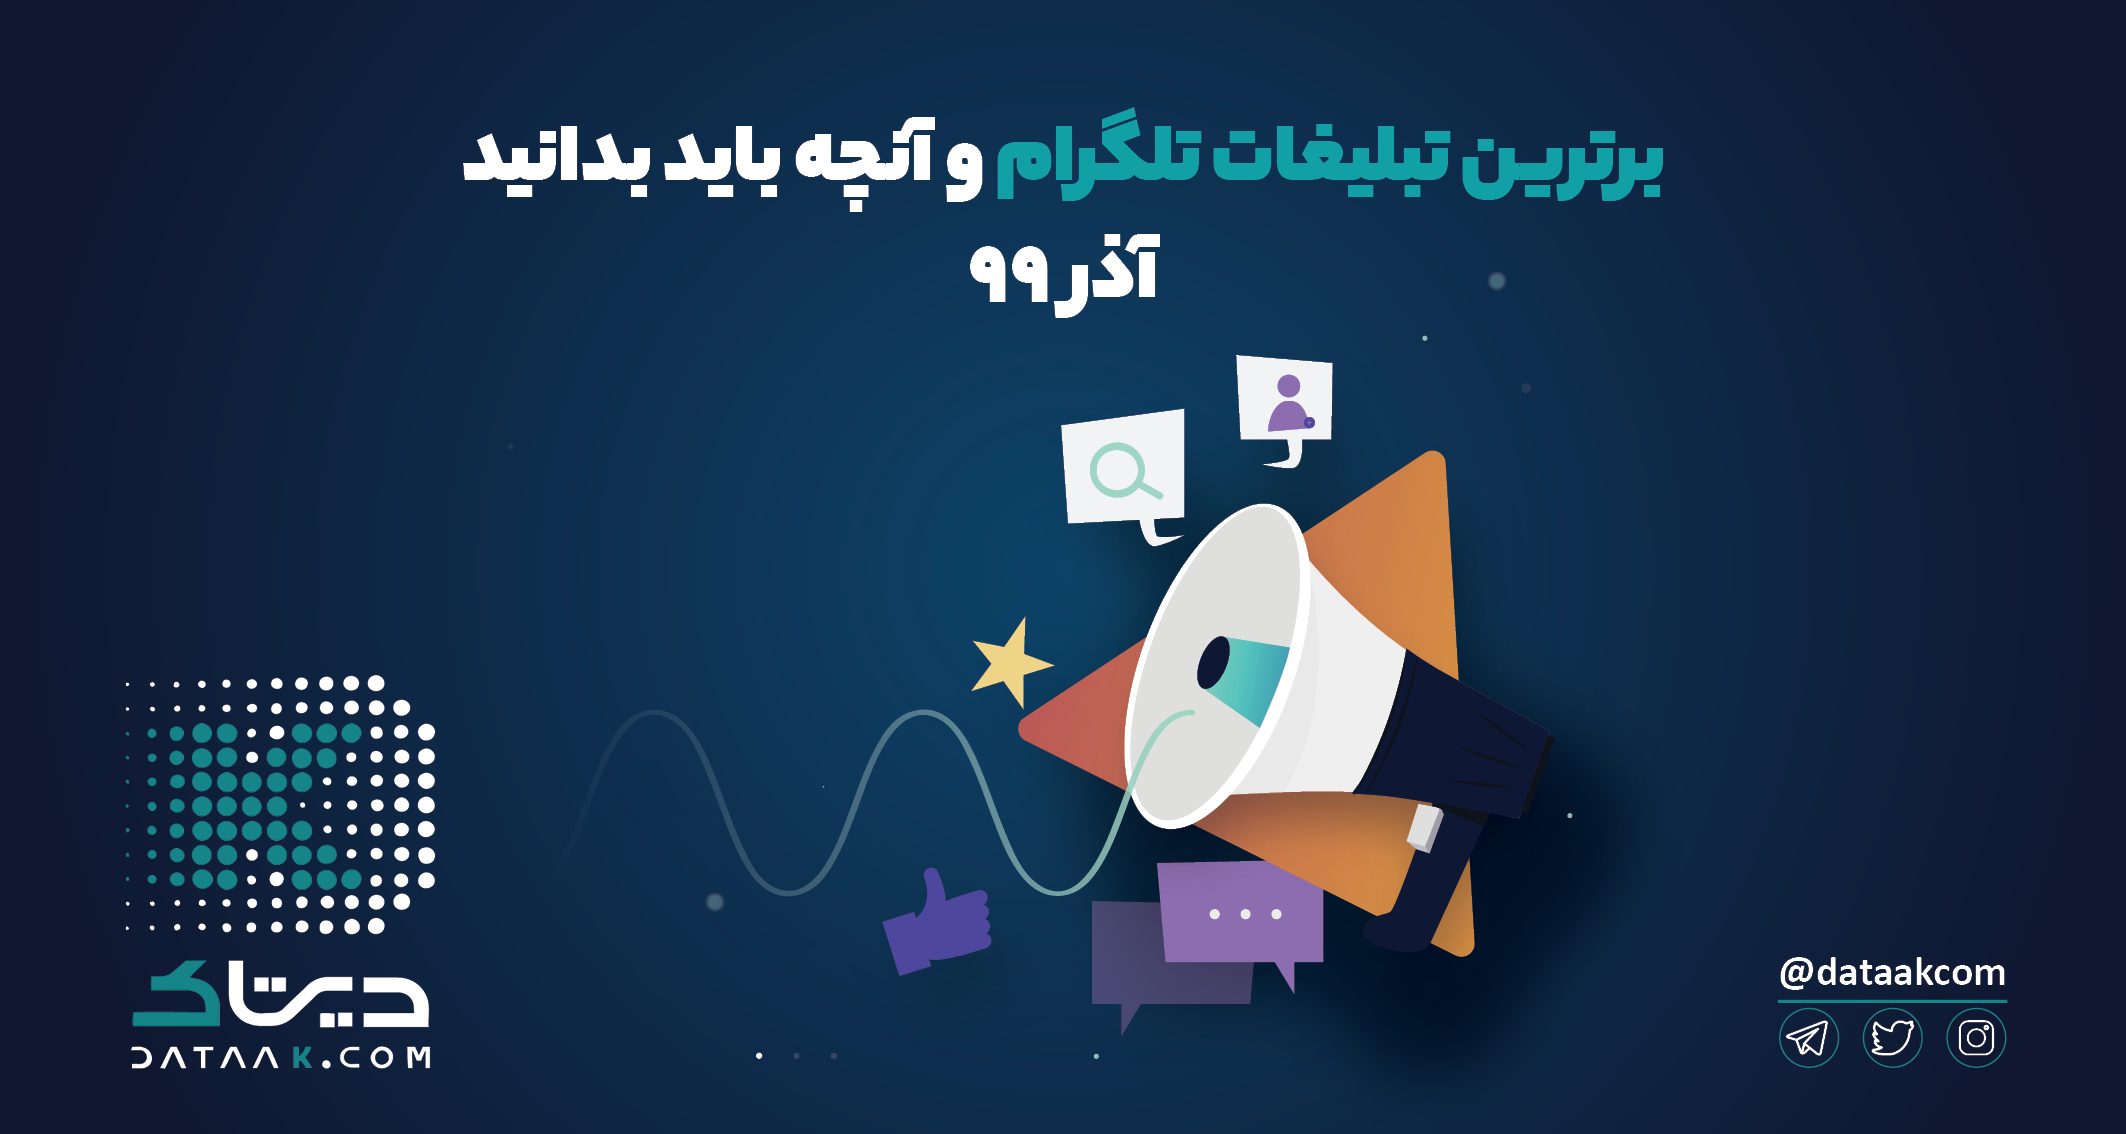 پربازدیدترین پست های تلگرام برندهای ایرانی